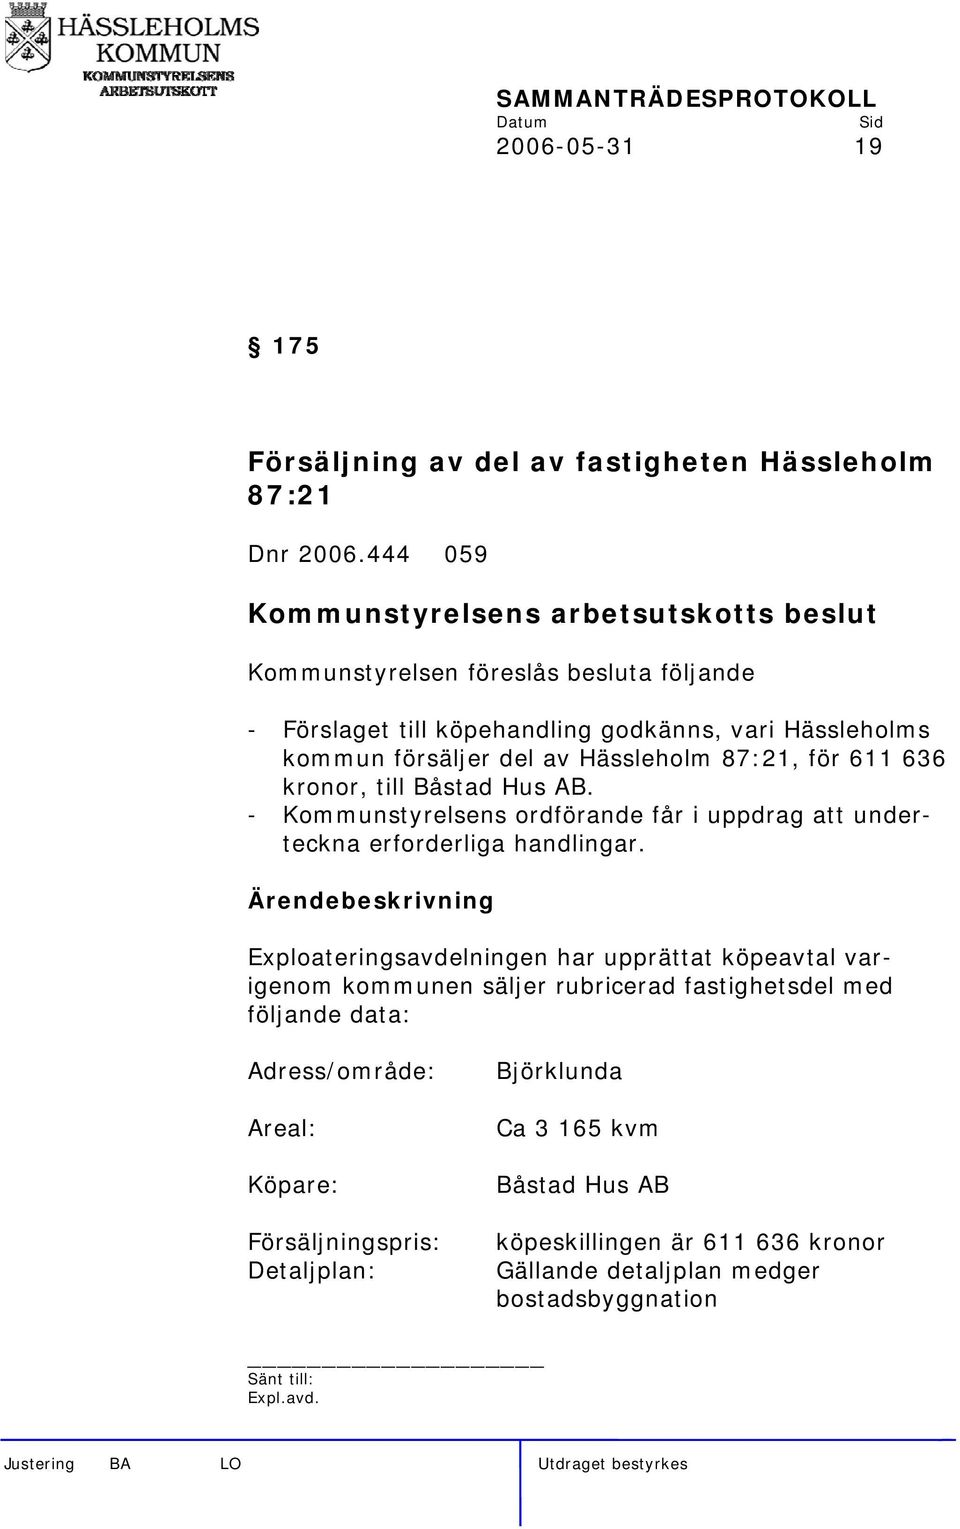 kronor, till Båstad Hus AB. - Kommunstyrelsens ordförande får i uppdrag att underteckna erforderliga handlingar.